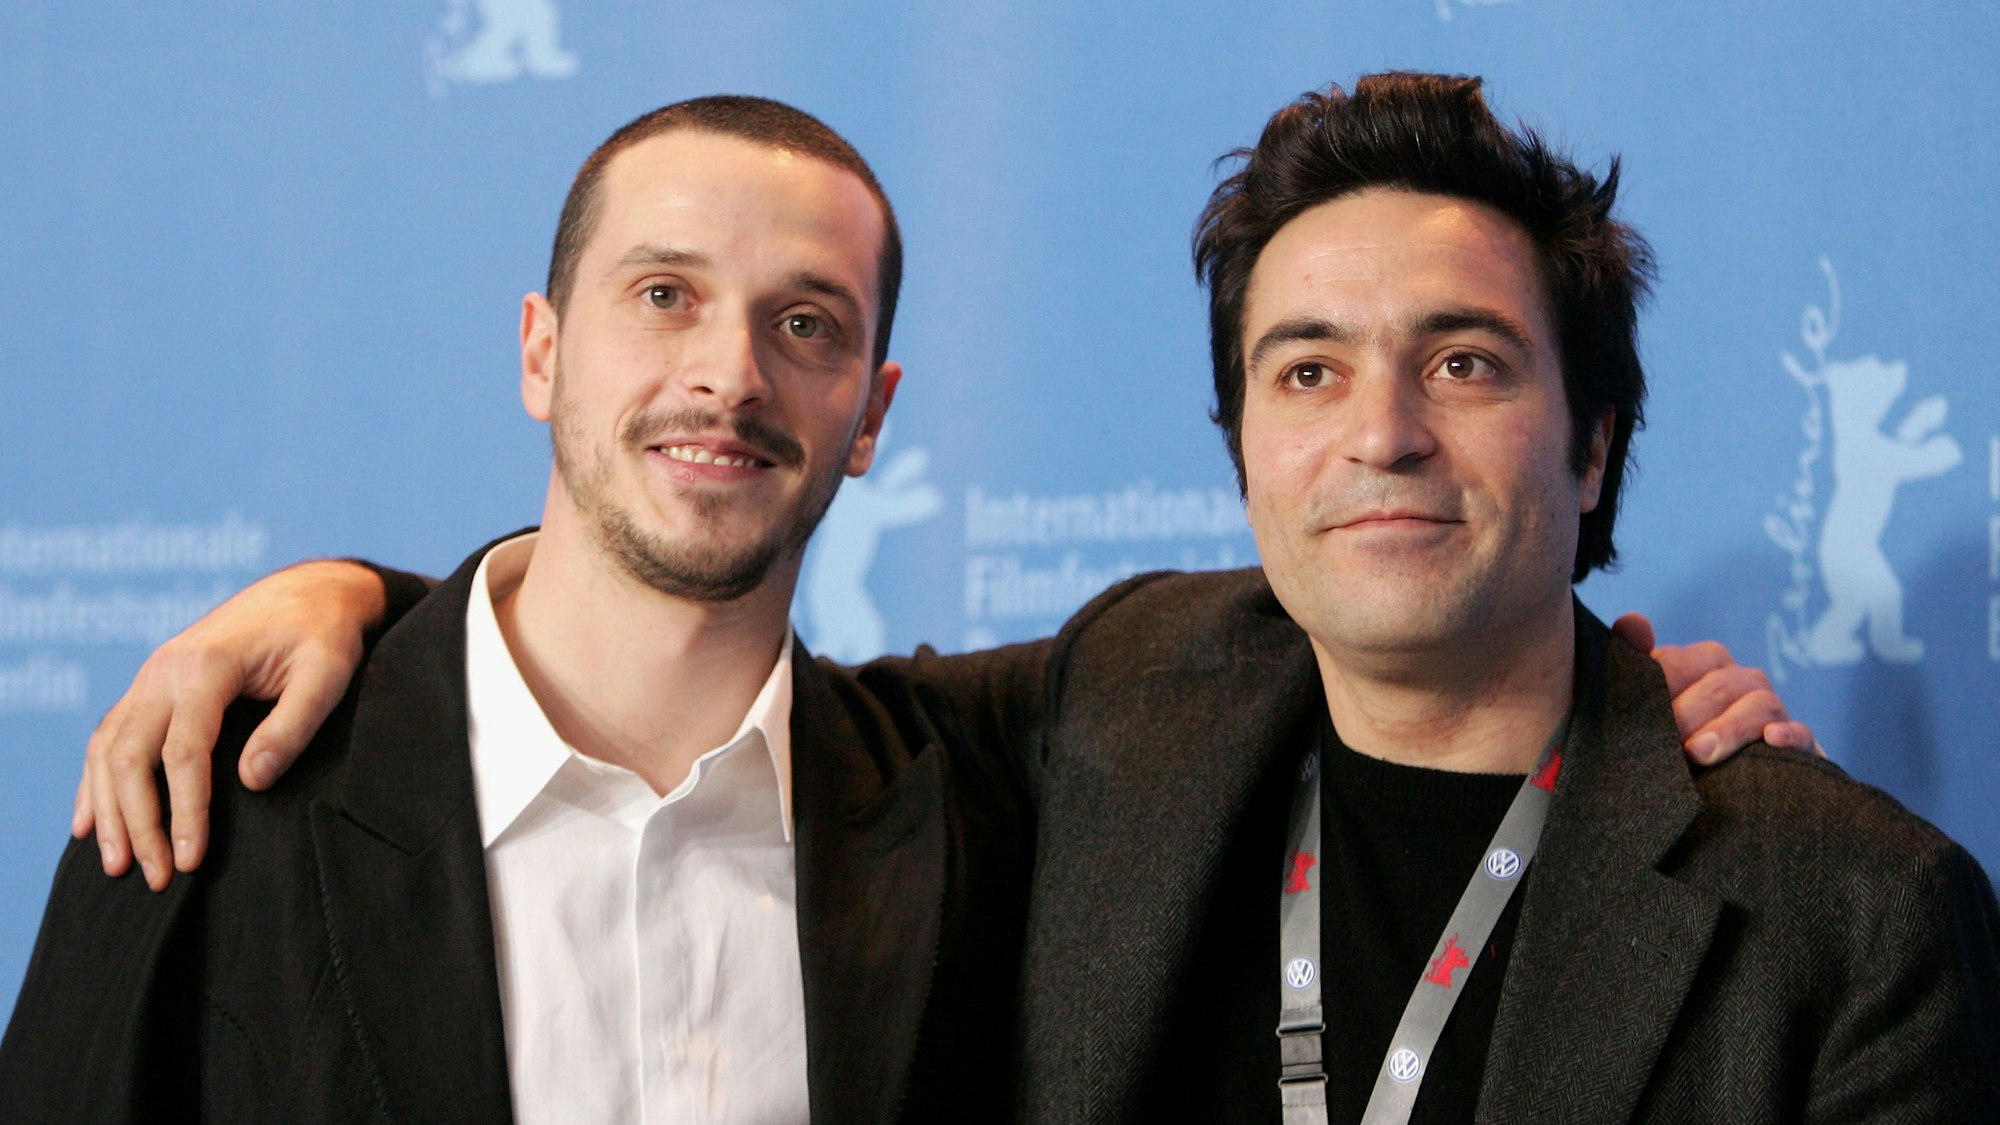 Christo Jivkov posiert mit Regisseur Saverio Costanzo für die Kameras.